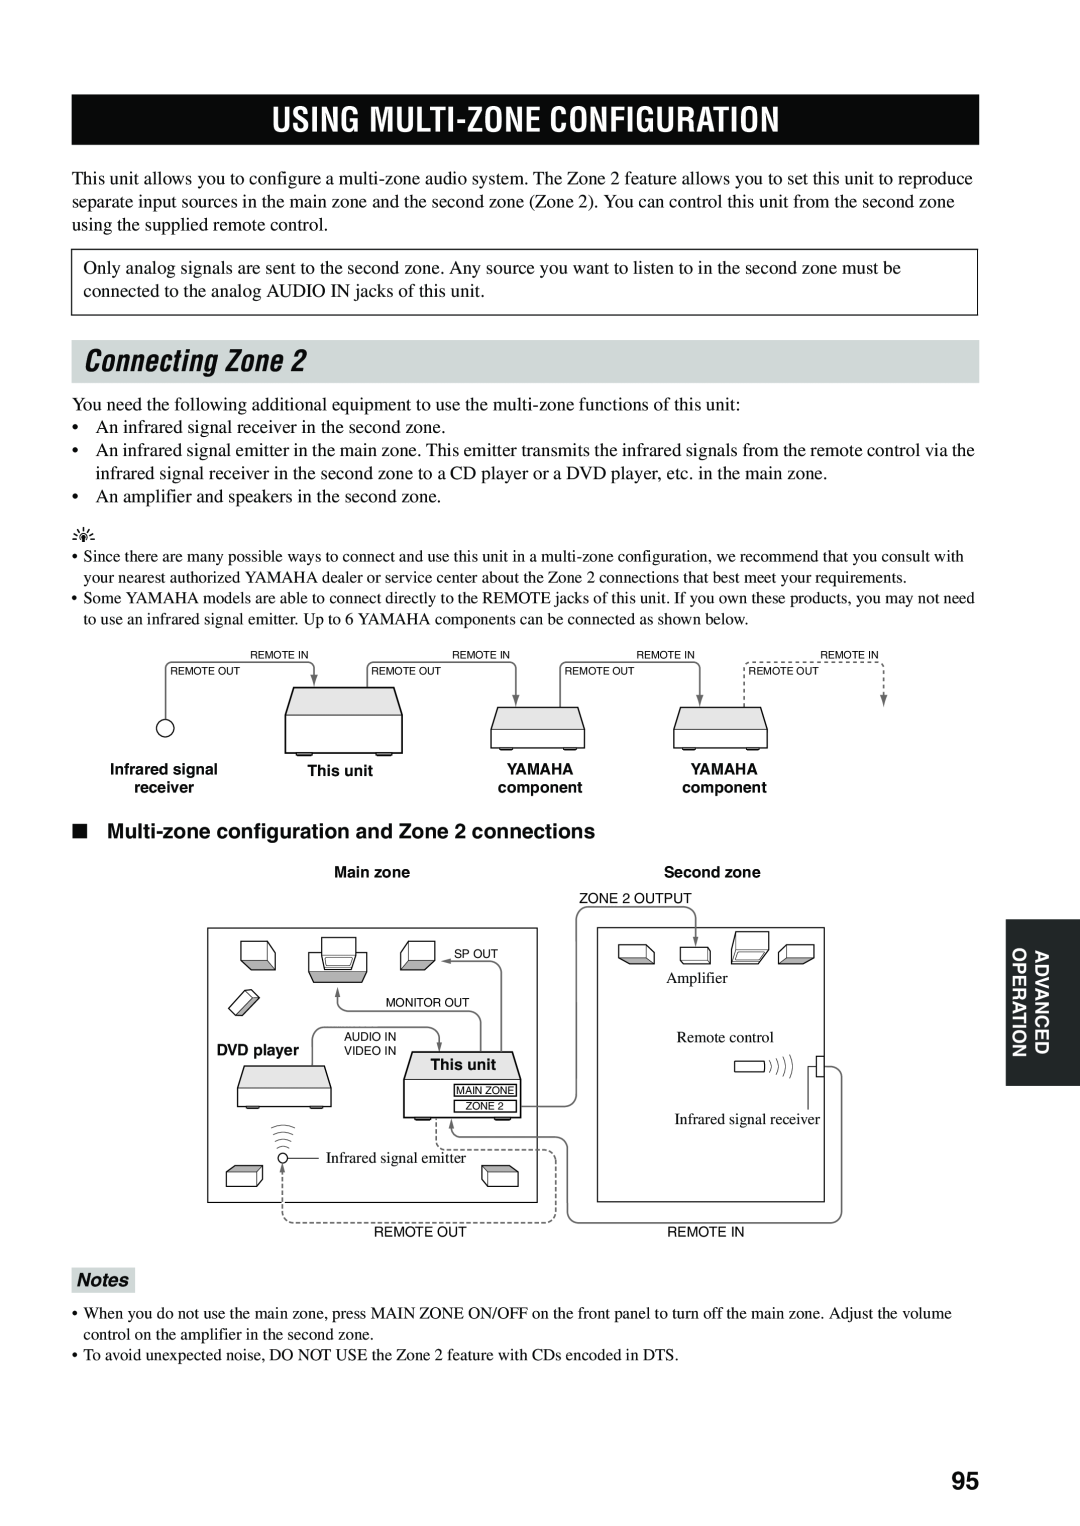 Yamaha RX-V559 Using Multi-Zoneconfiguration, Connecting Zone, Multi-zoneconfiguration and Zone 2 connections, Notes 